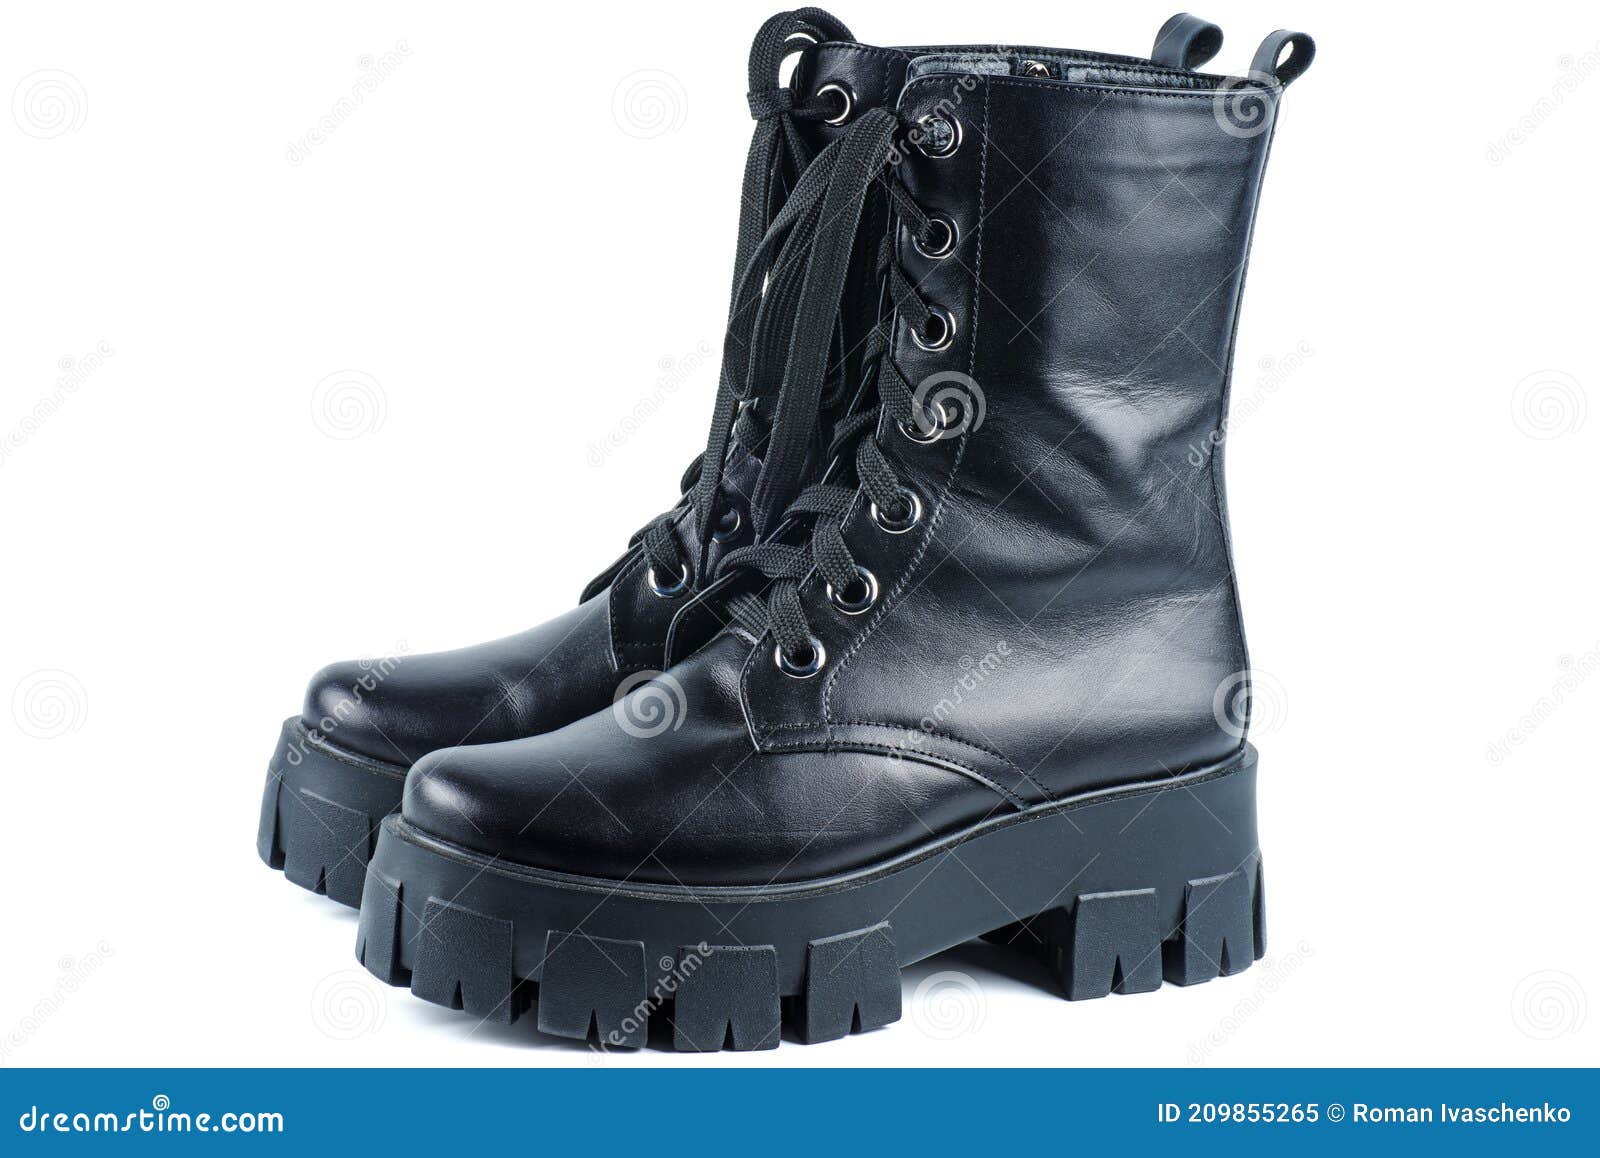 Botas De Cuero Negro . Zapatos De Moda Mujer De Cuero Negro. Botas Estilo Militar Para Mujer Imagen de archivo Imagen de oscuro, aislado: 209855265